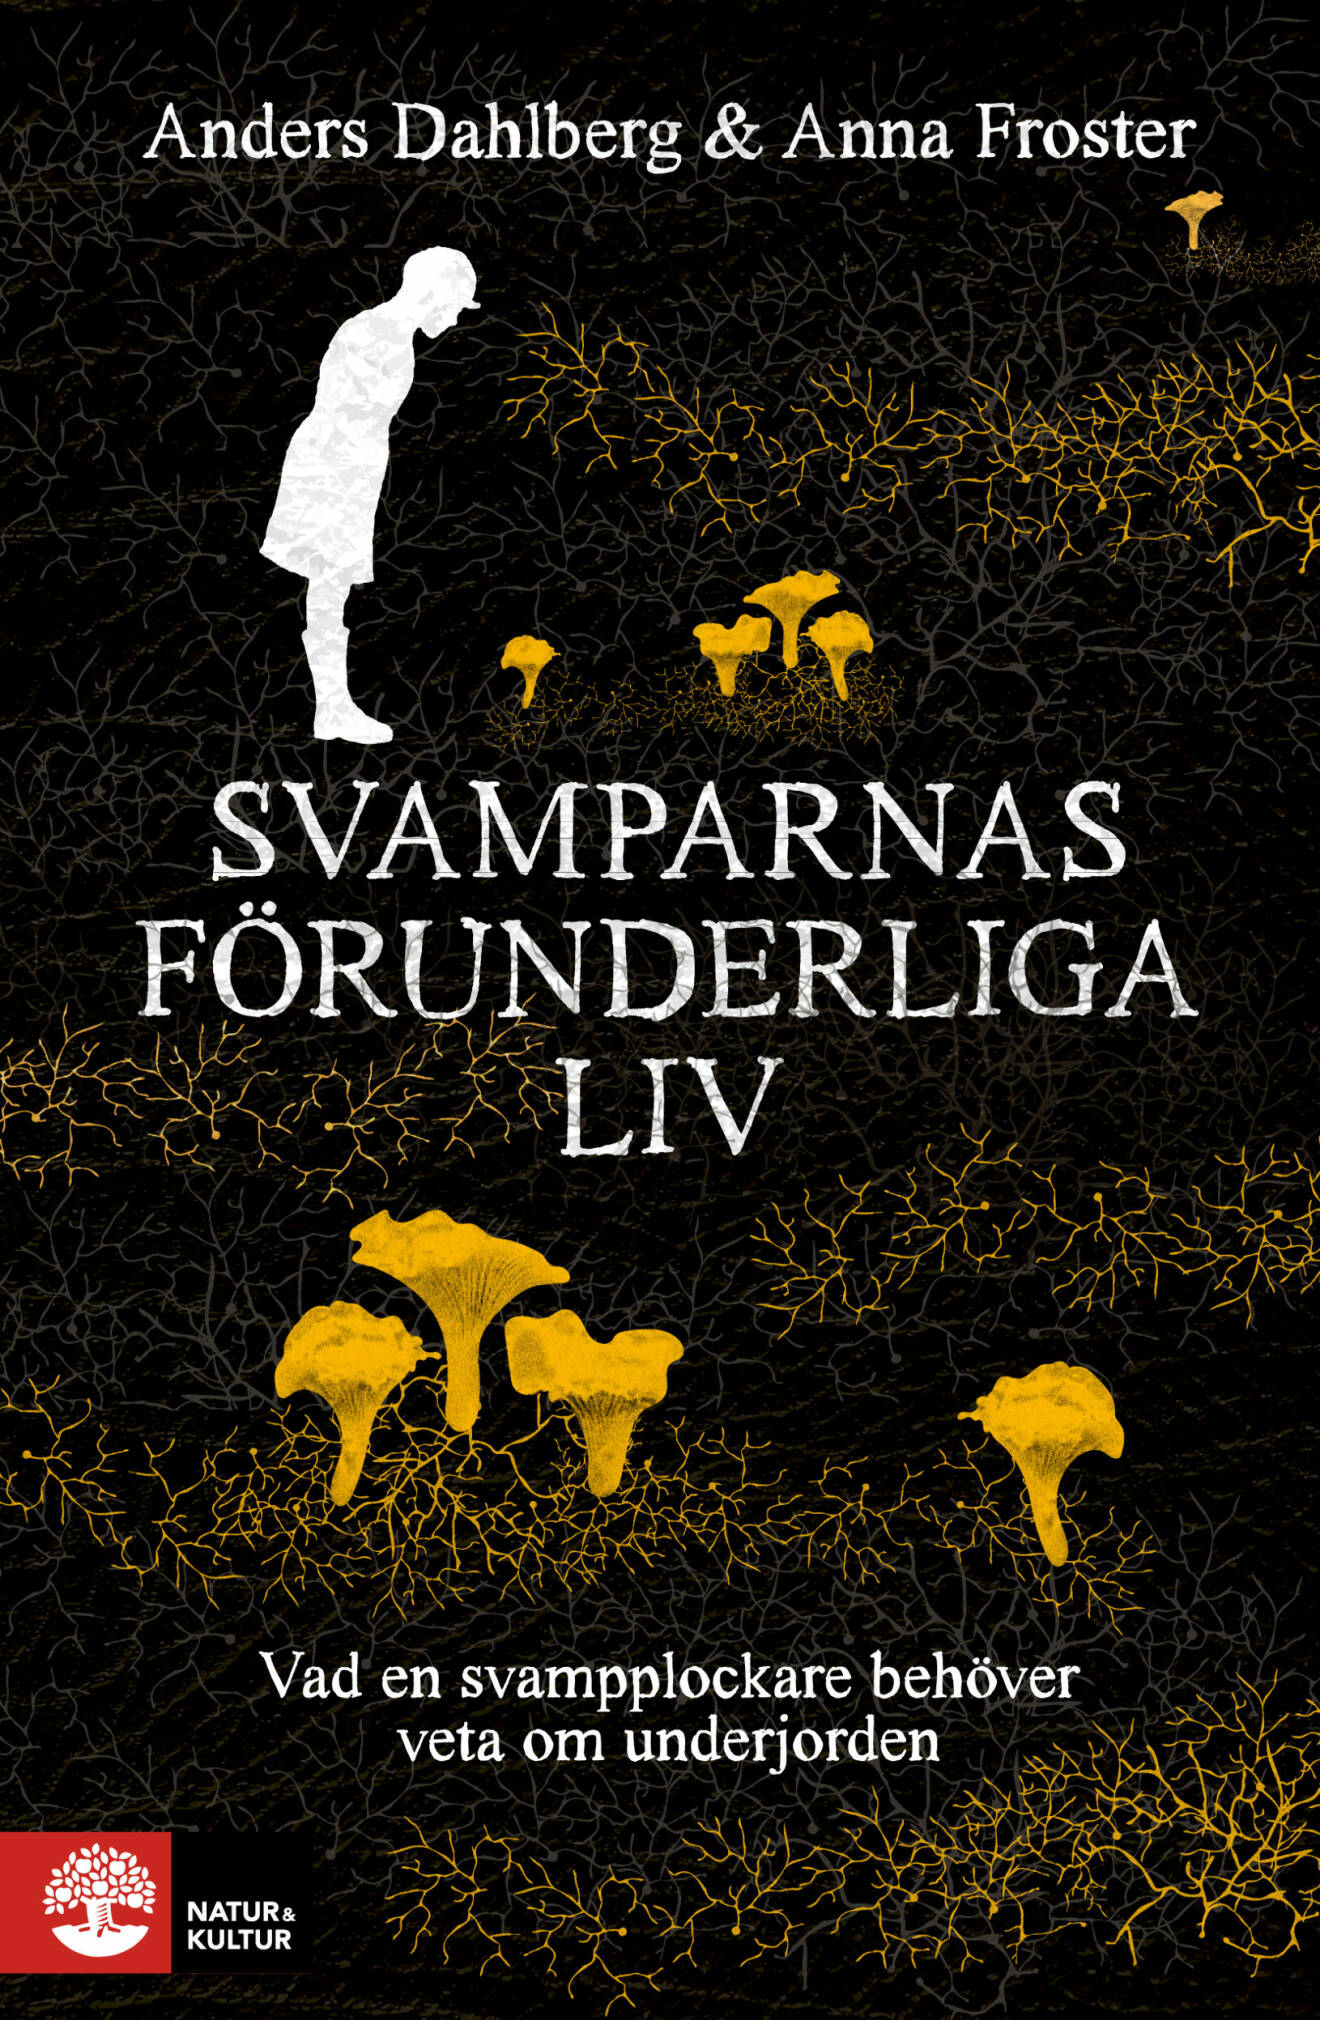 Svamparnas förunderliga liv, Anders Dahlberg &amp; Anna Froster (N&amp;K)